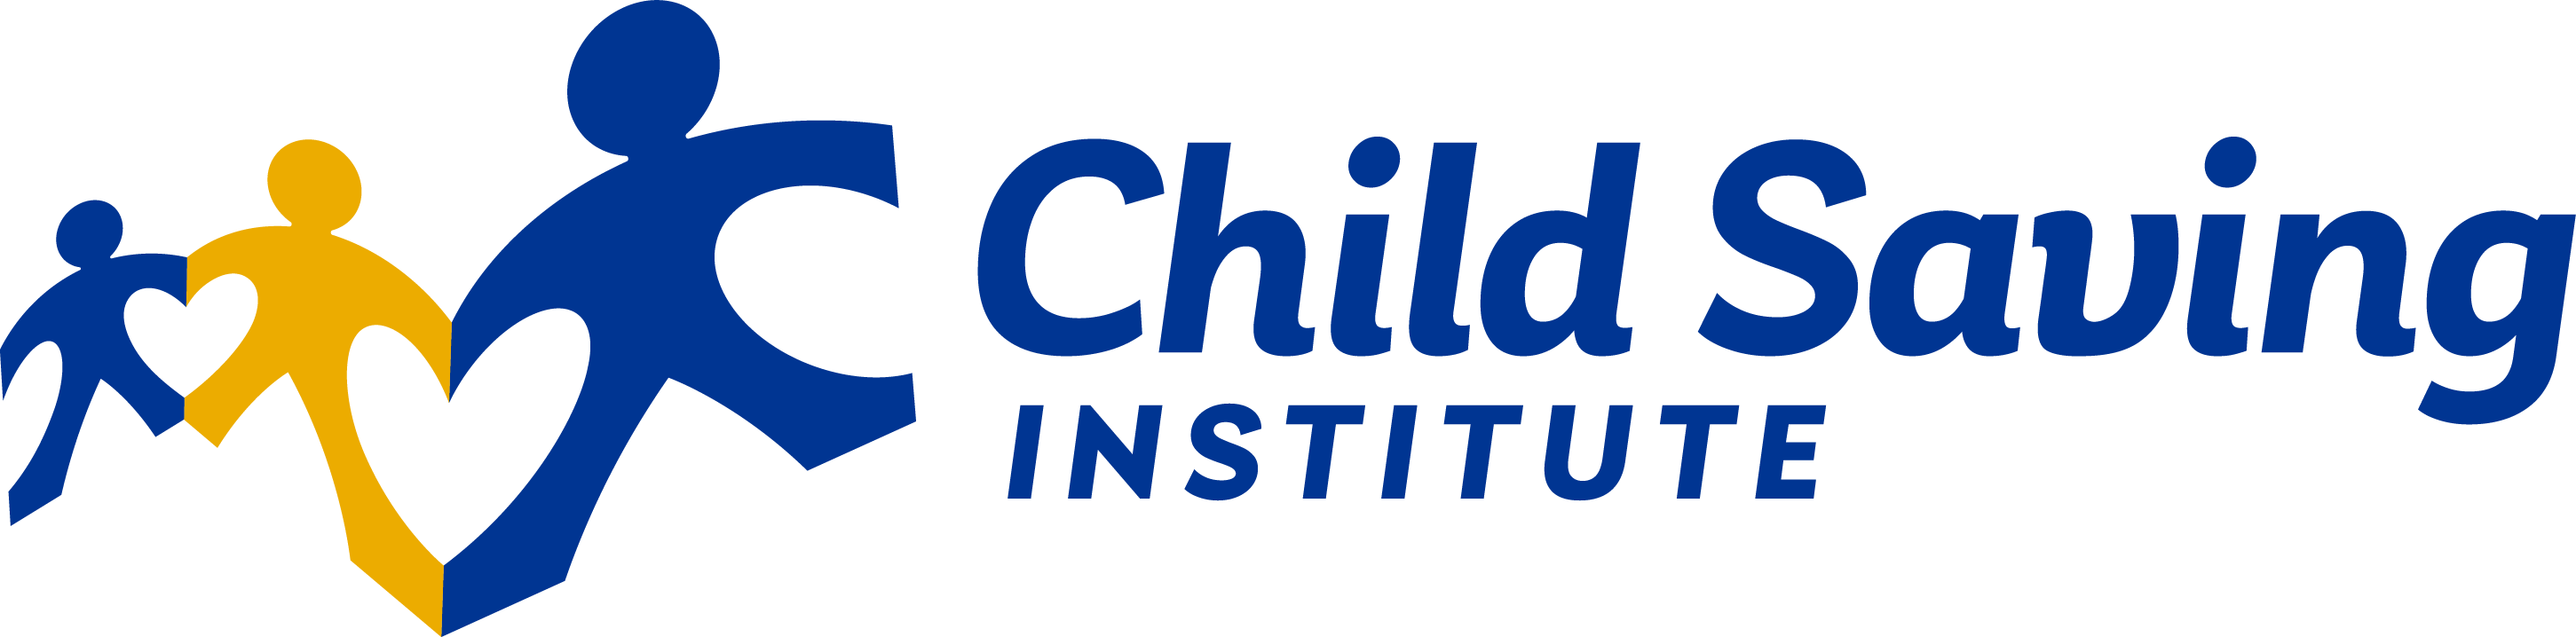 Child Saving Institute logo